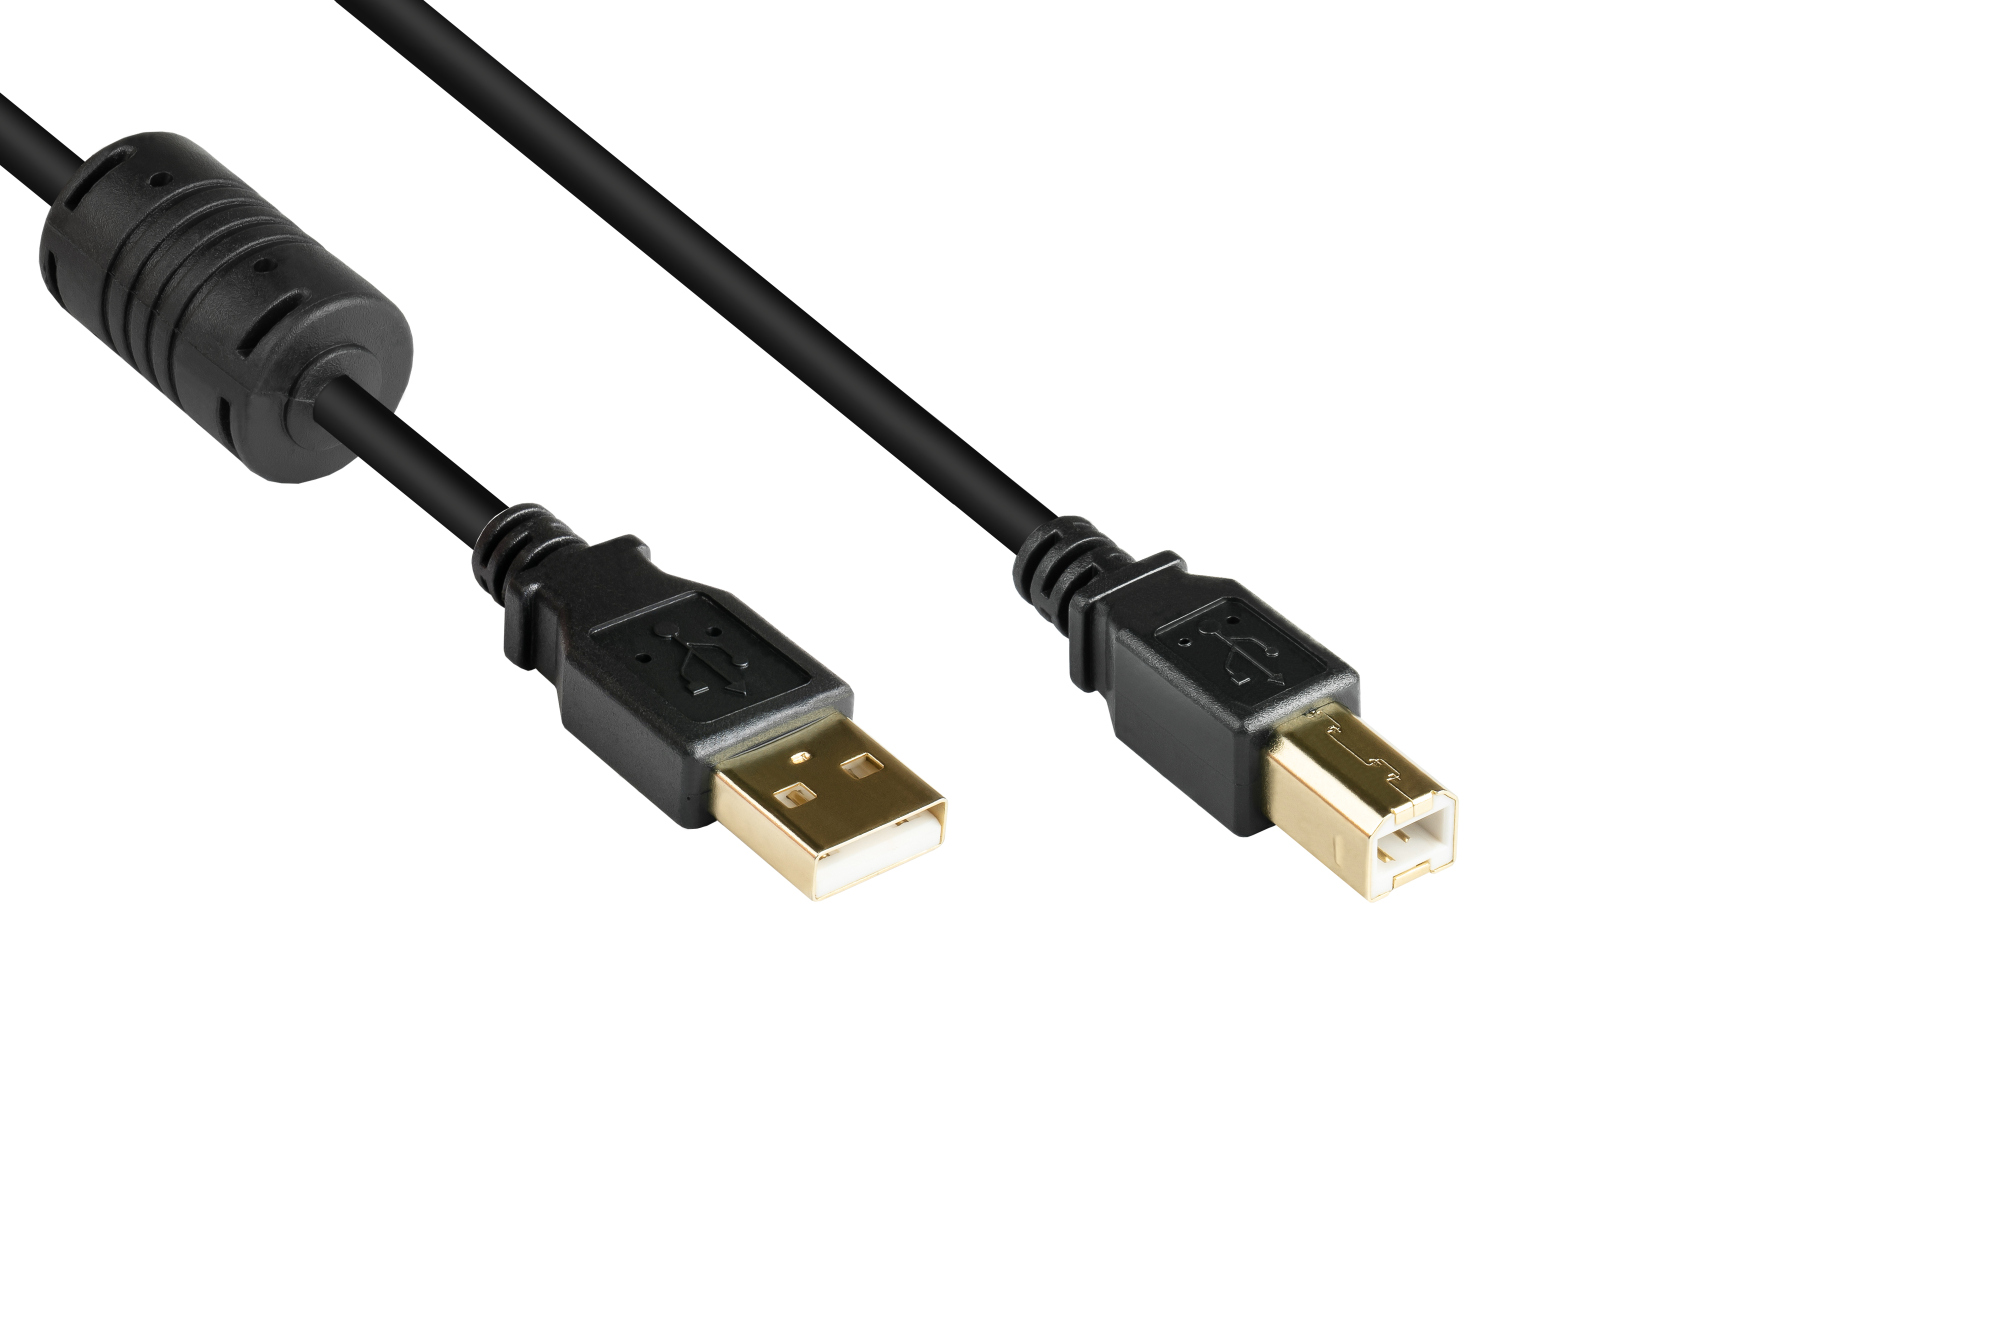 Anschlusskabel USB 2.0 Stecker A an Stecker B, mit Ferritkern, vergoldet, schwarz, 2m, Good Connecti